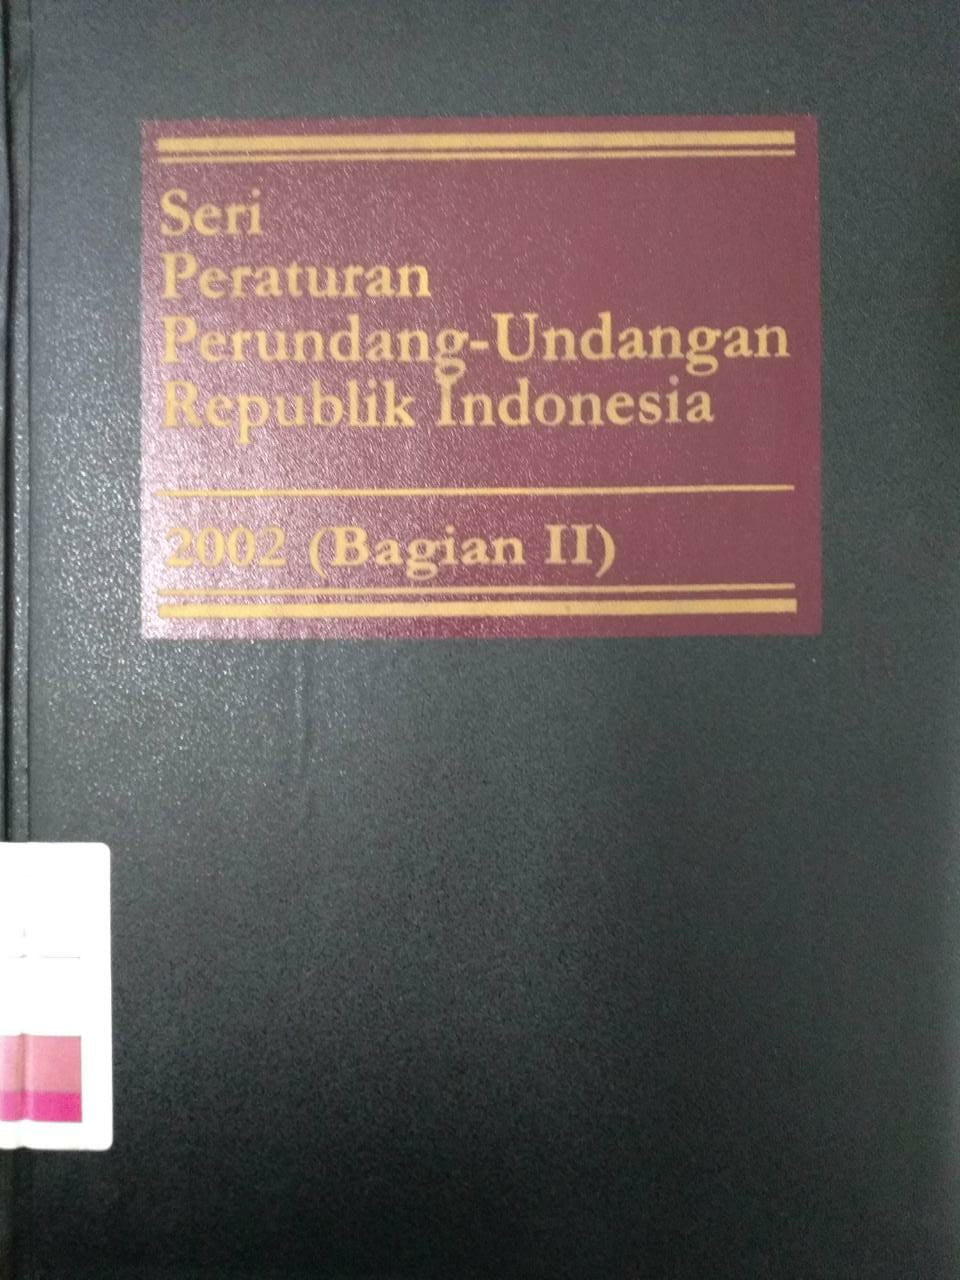 Seri Peraturan Perundang-undangan Republik Indonesia 2002 (Bagian III)